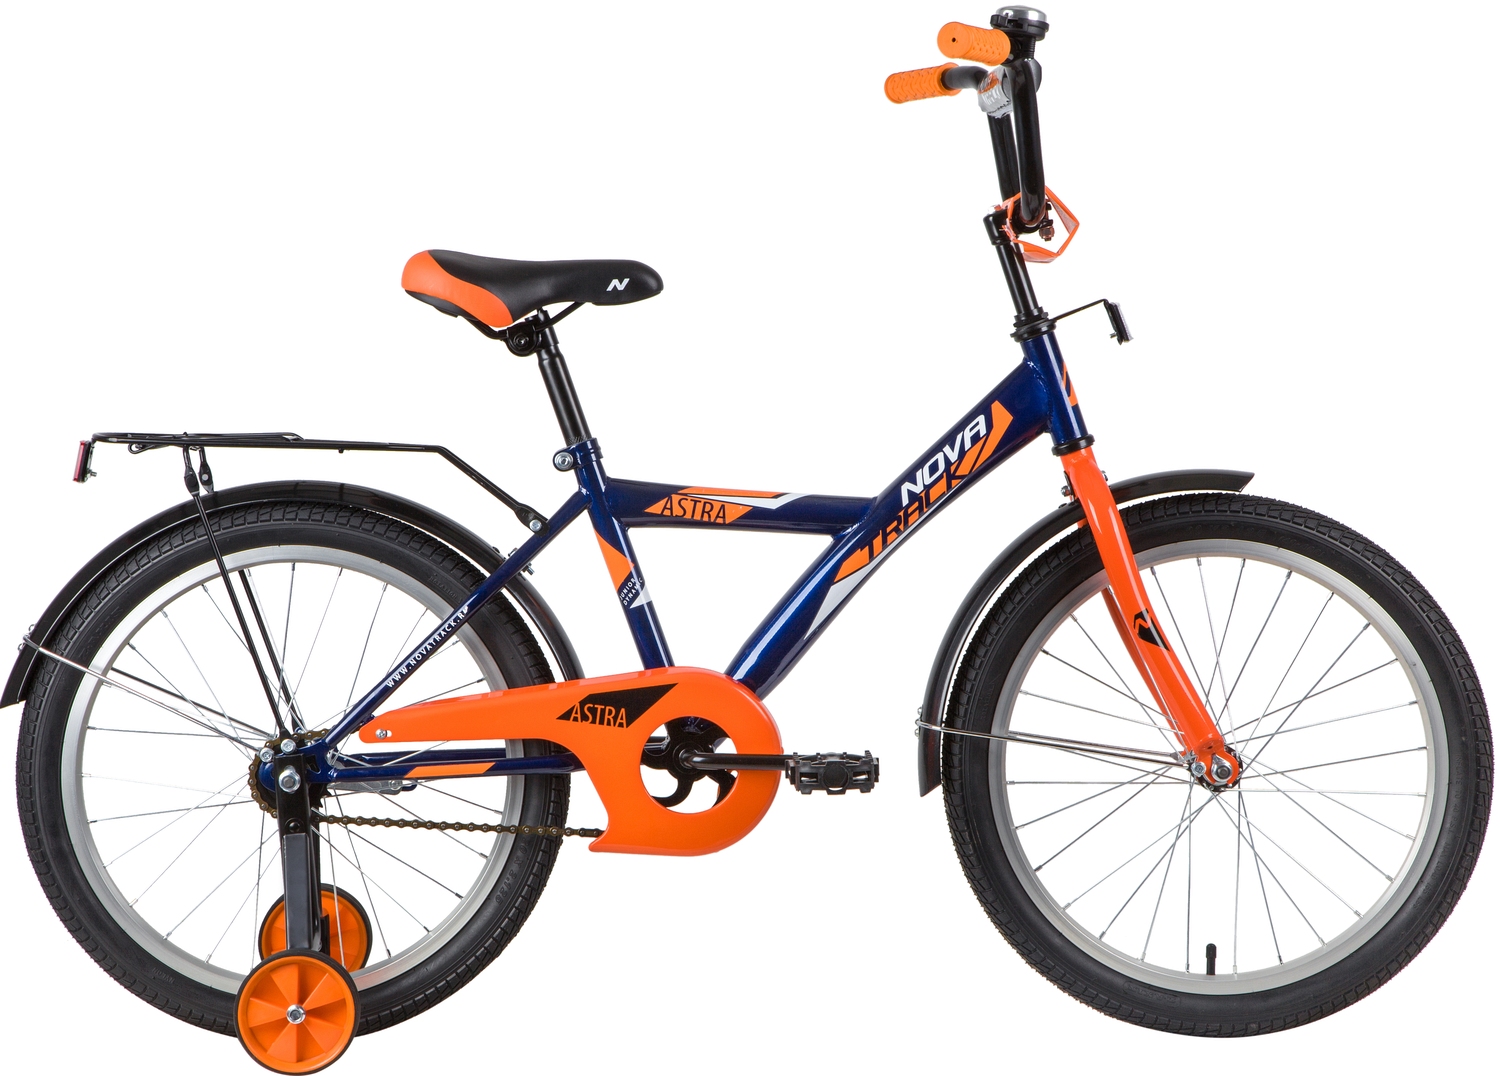  Отзывы о Детском велосипеде Novatrack Astra 20 2020